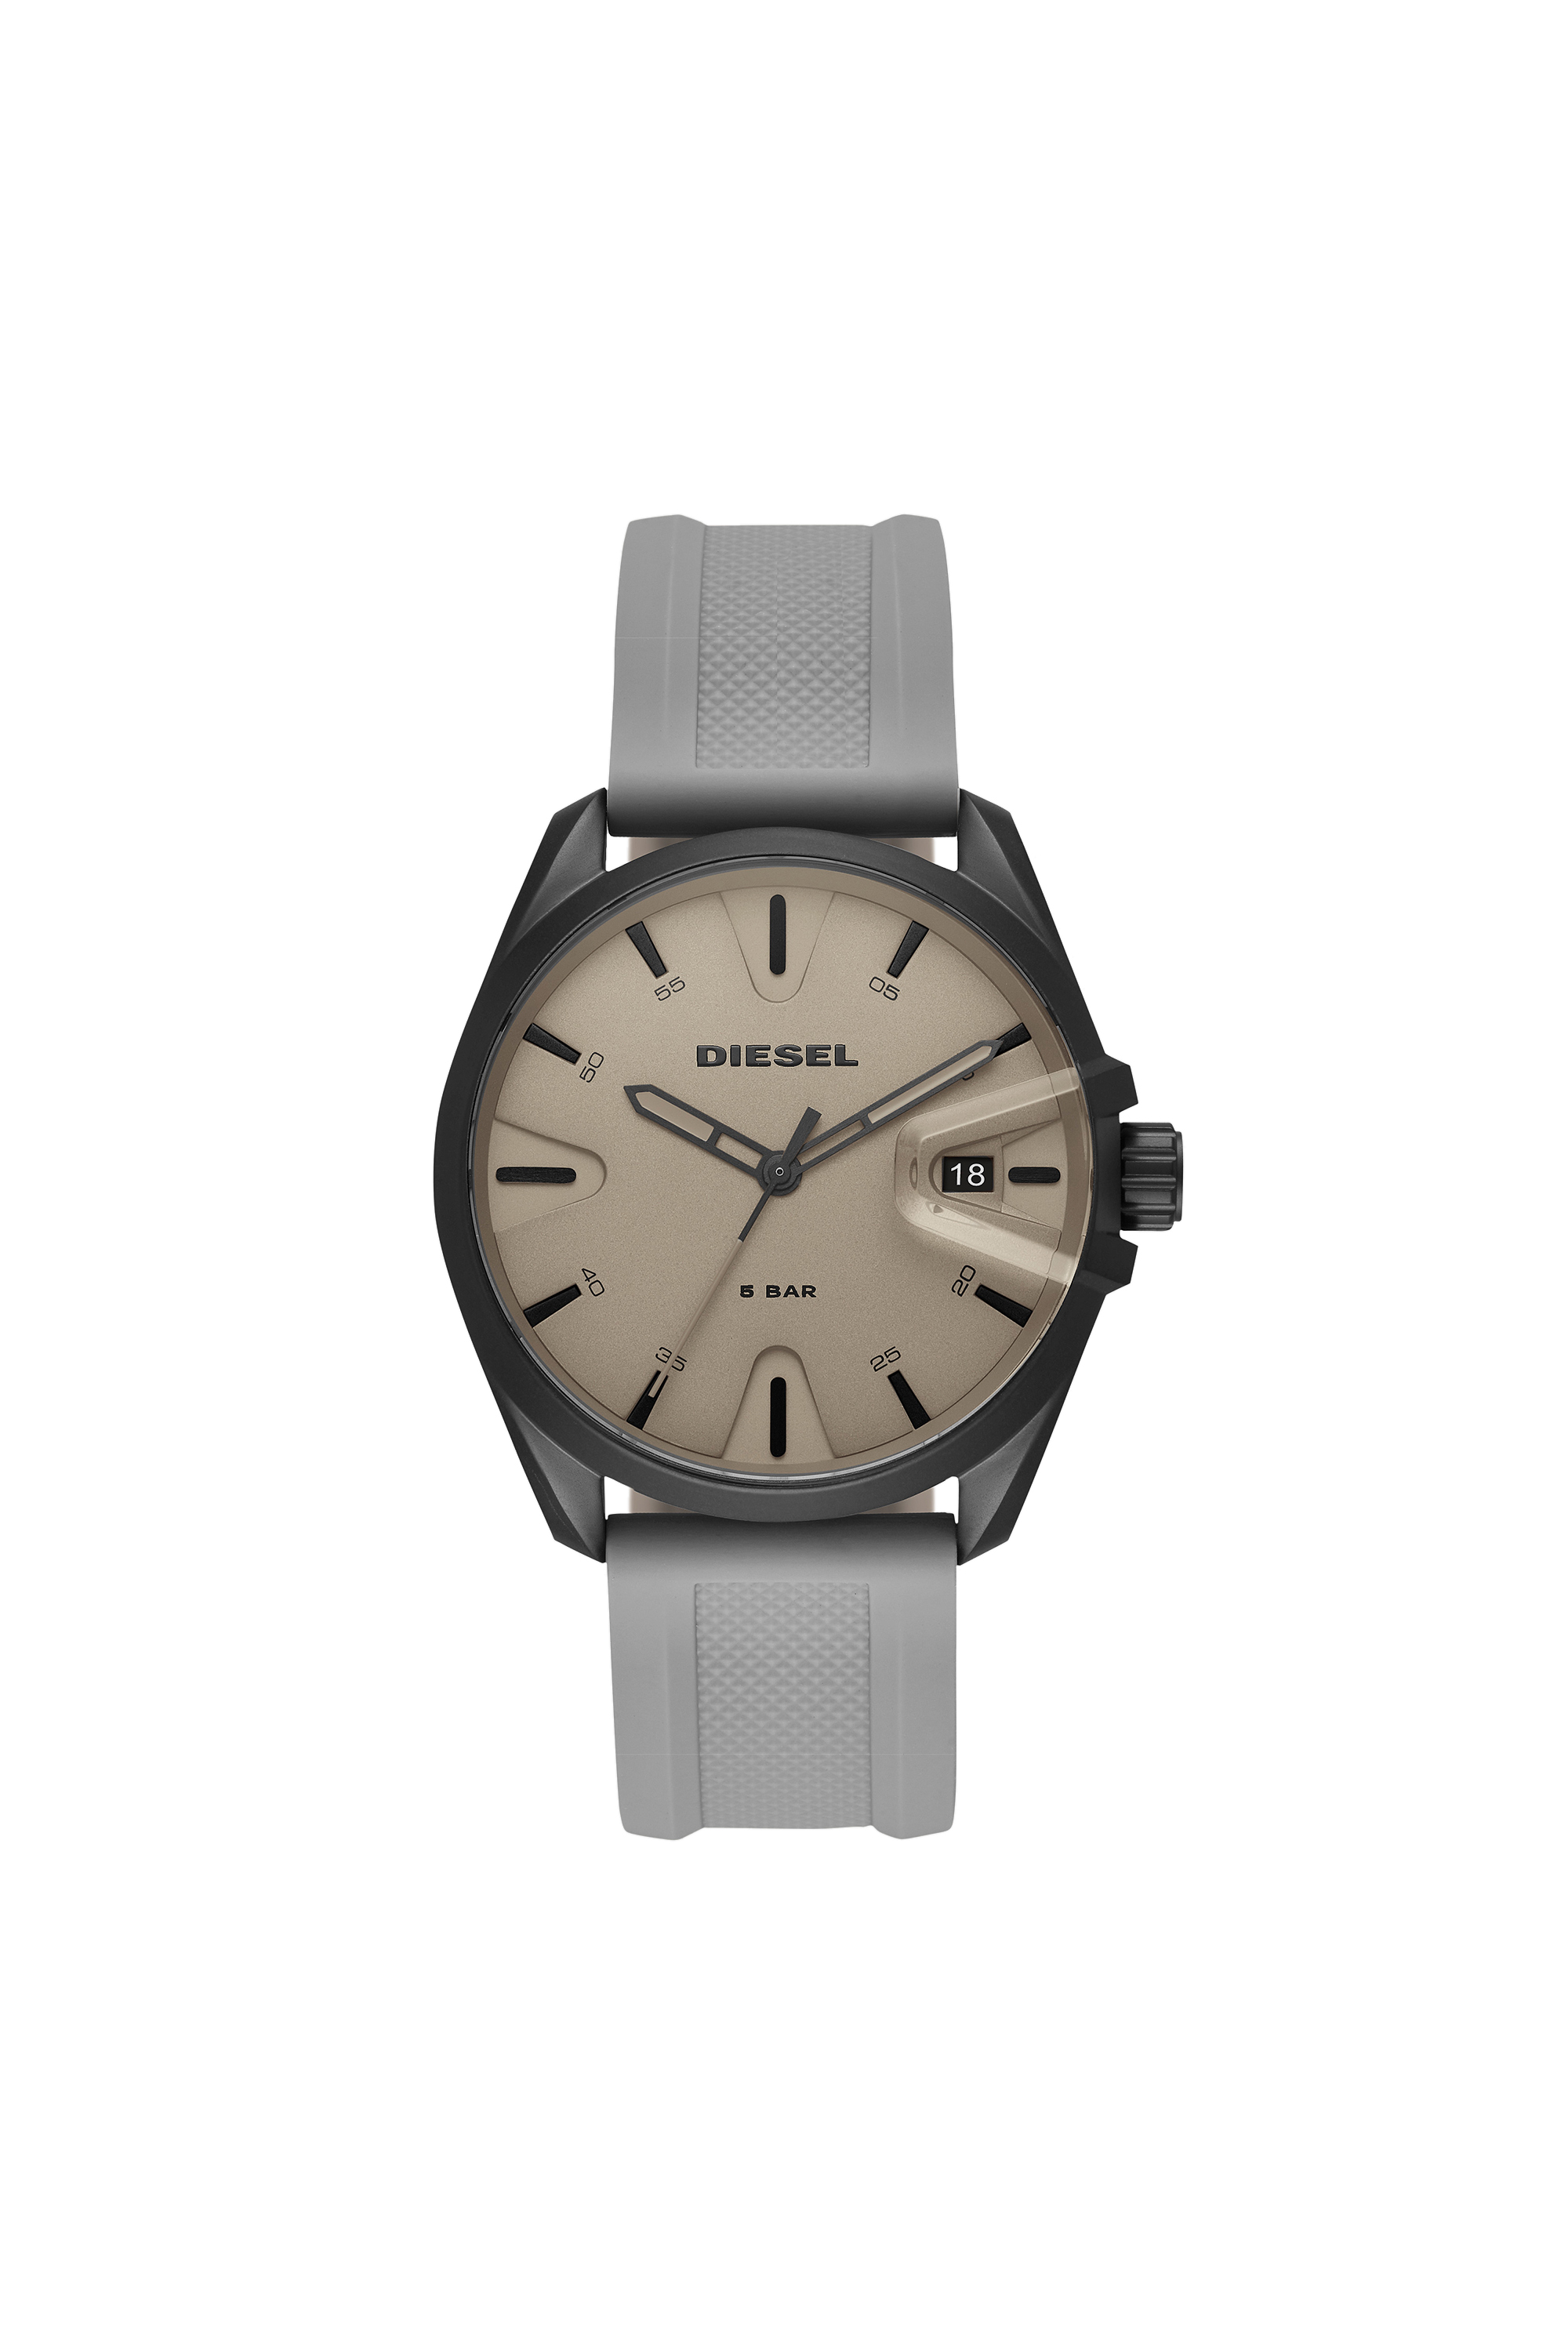 DZ1878 Man: MS9 three-hand gray silicone watch | Diesel